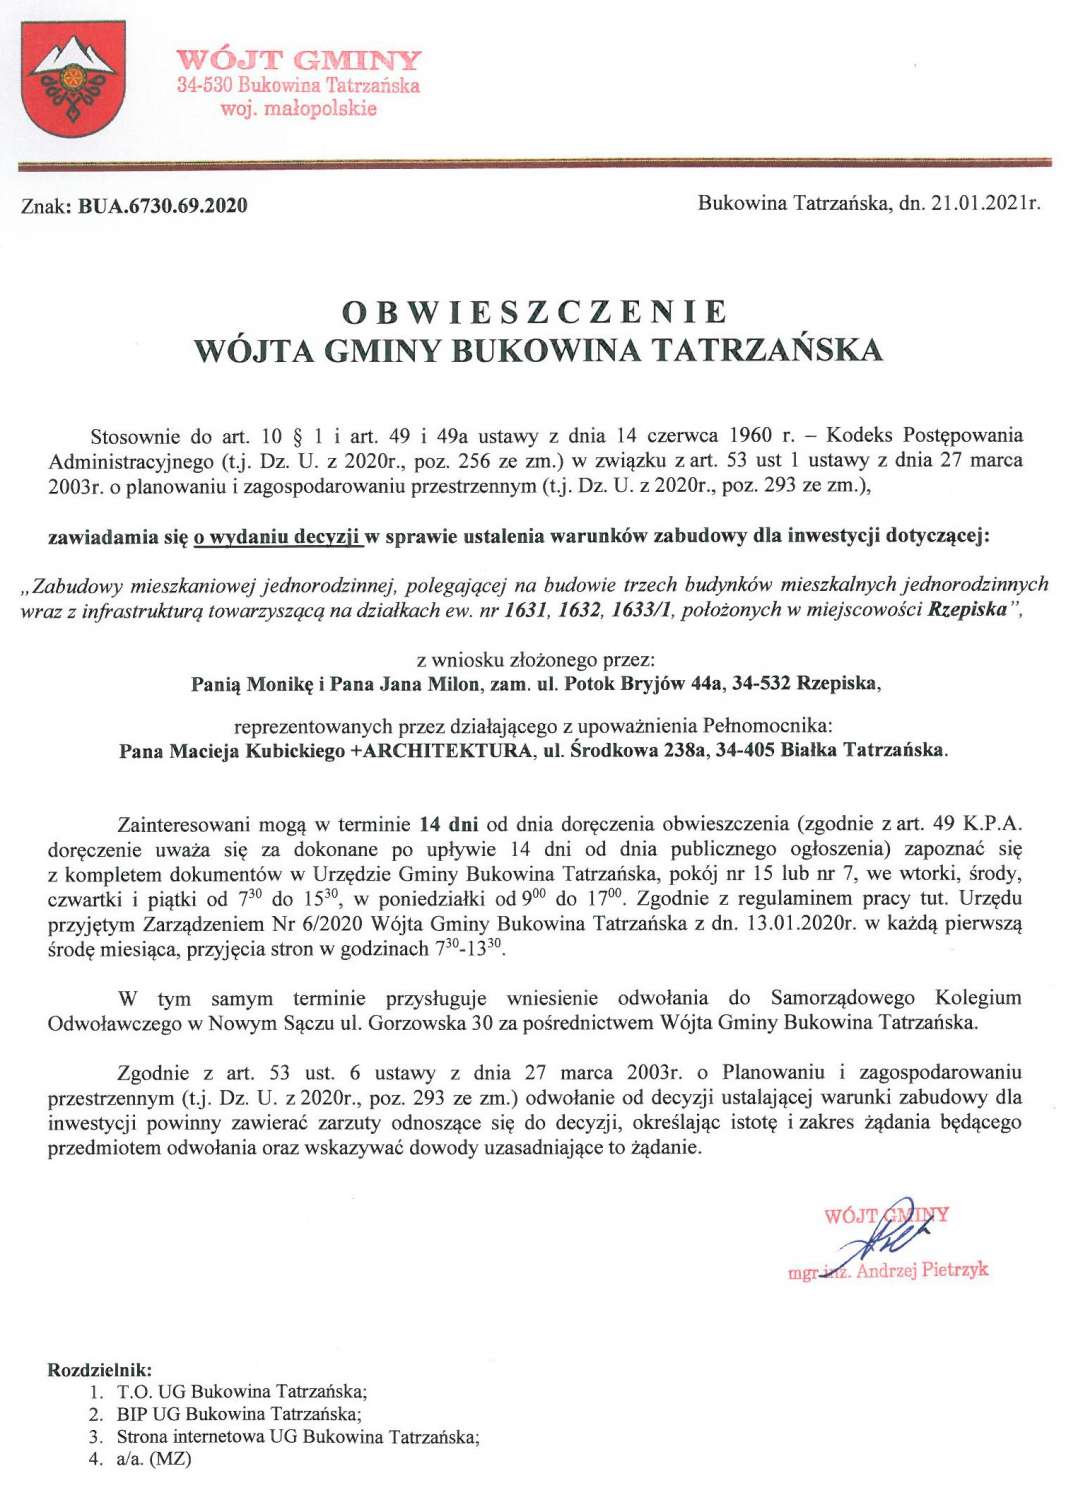 Obwieszczenie Wójta Gminy Bukowina Tatrzańska BUA 6730.69.2020